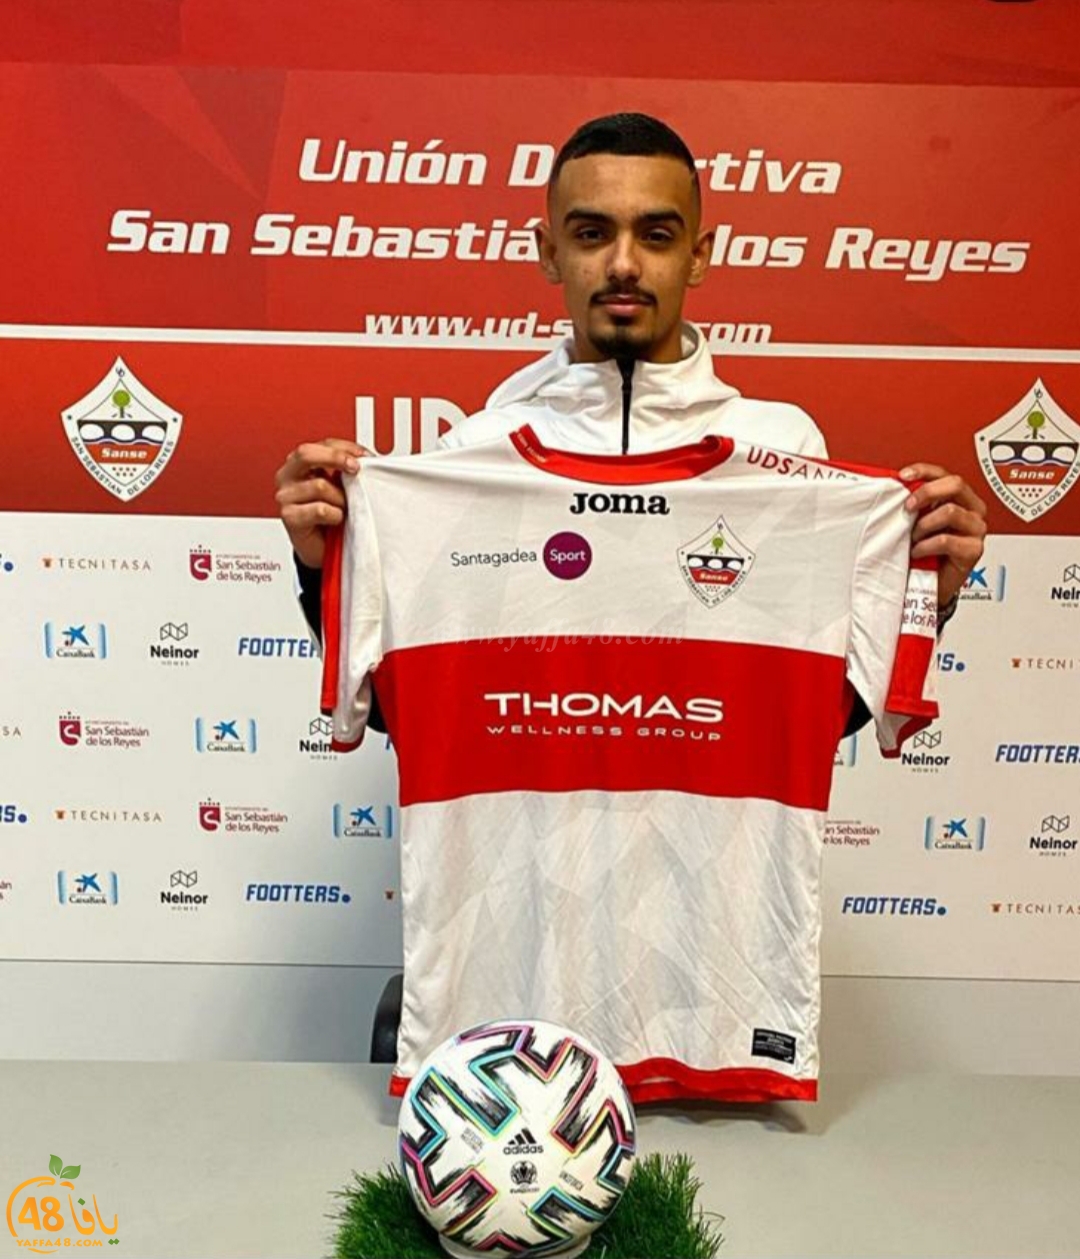  اللاعب سامي أبو موسى من اللد يُوقع عقداً مع فريق سان سيباستيان الاسباني